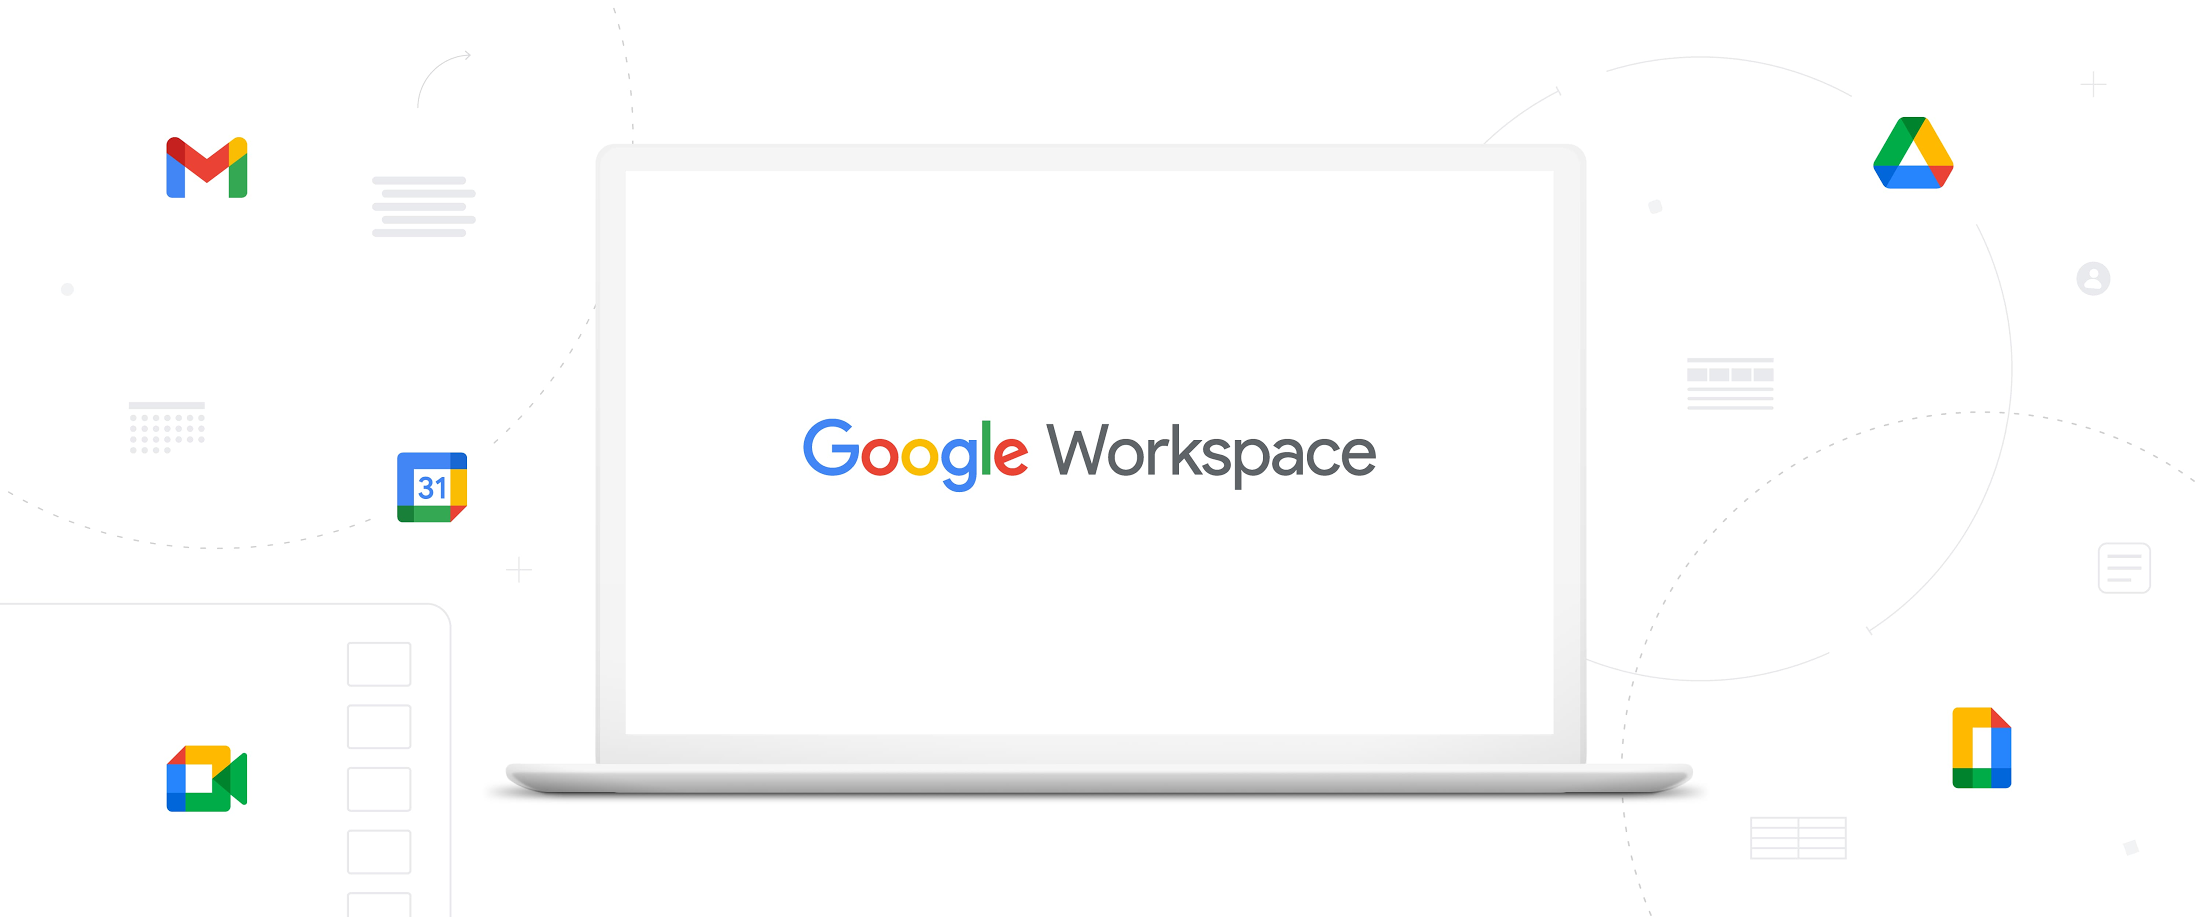 Google เปิดตัว Google Workspace | ทุกสิ่งที่คุณต้องการ สำหรับการทำงานที่ง่ายกว่า!